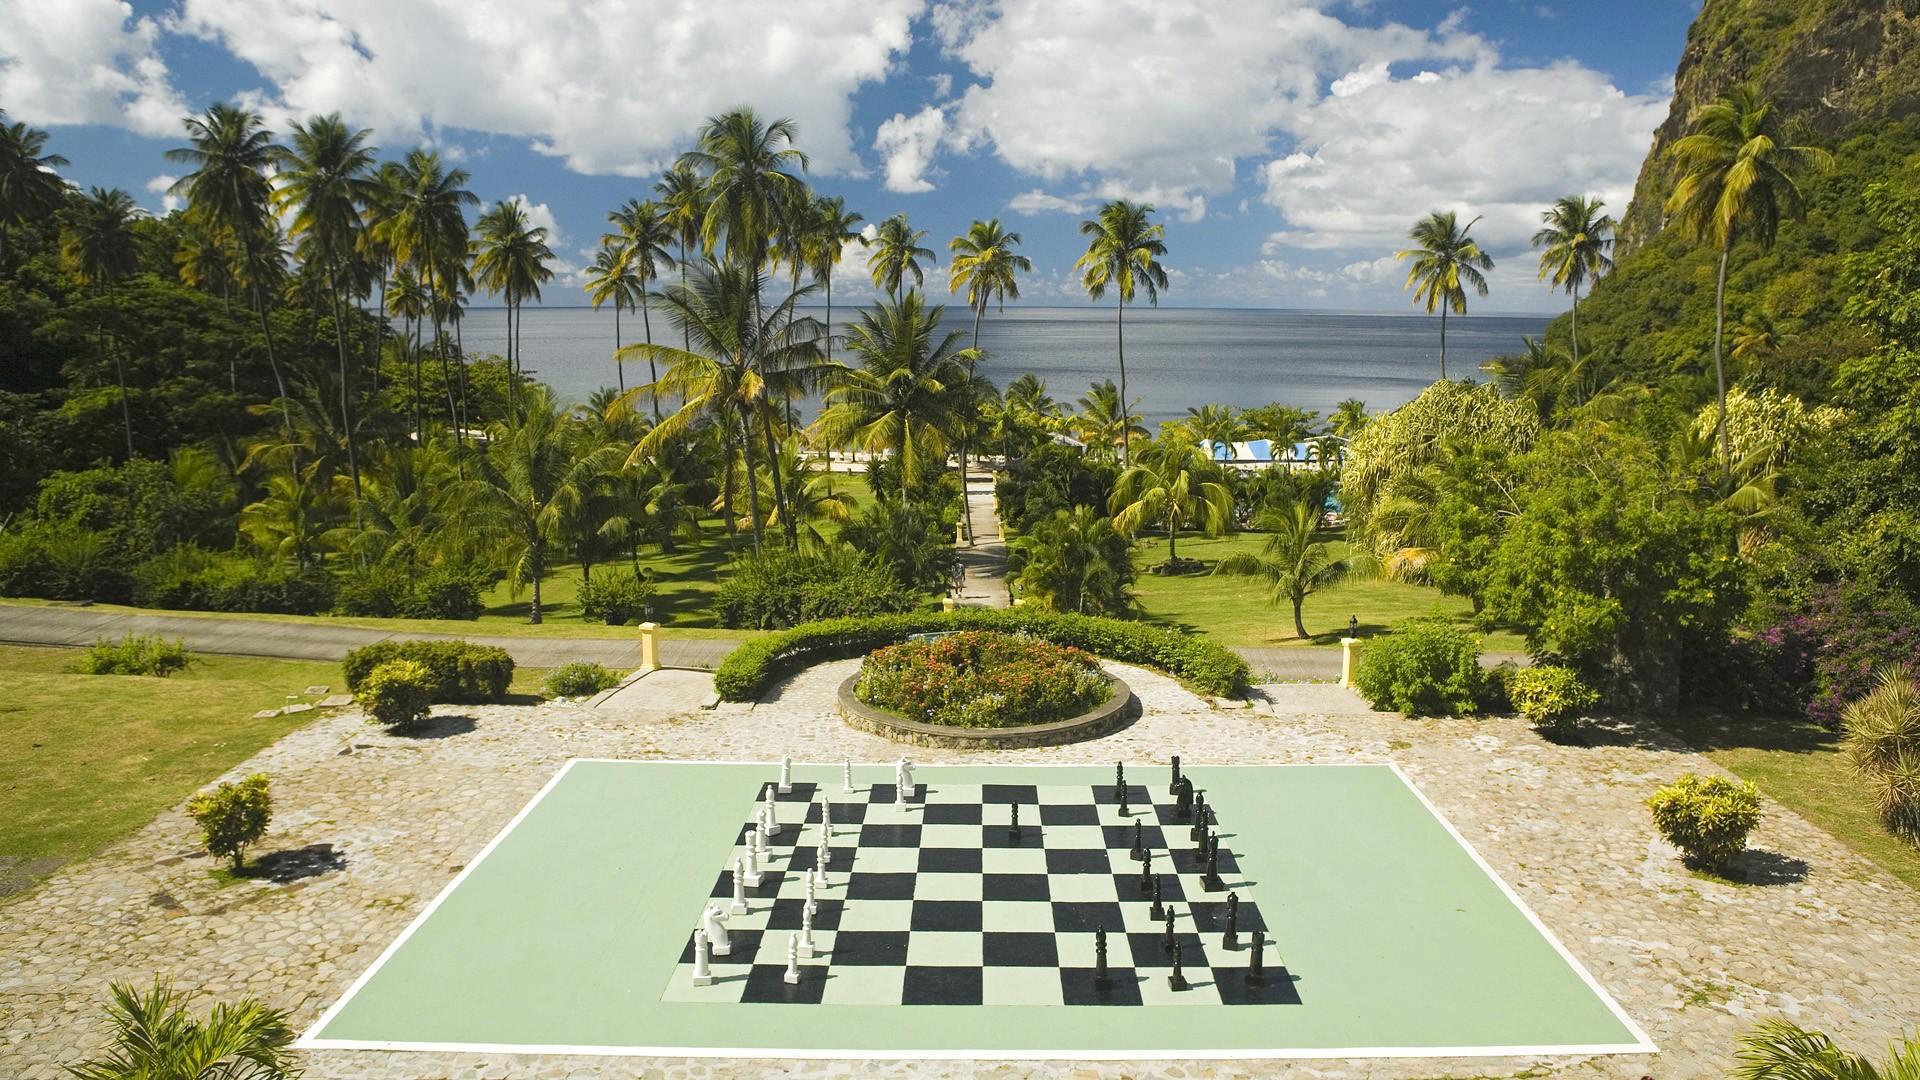 Chess Board Wallpaper Plantation Lucia